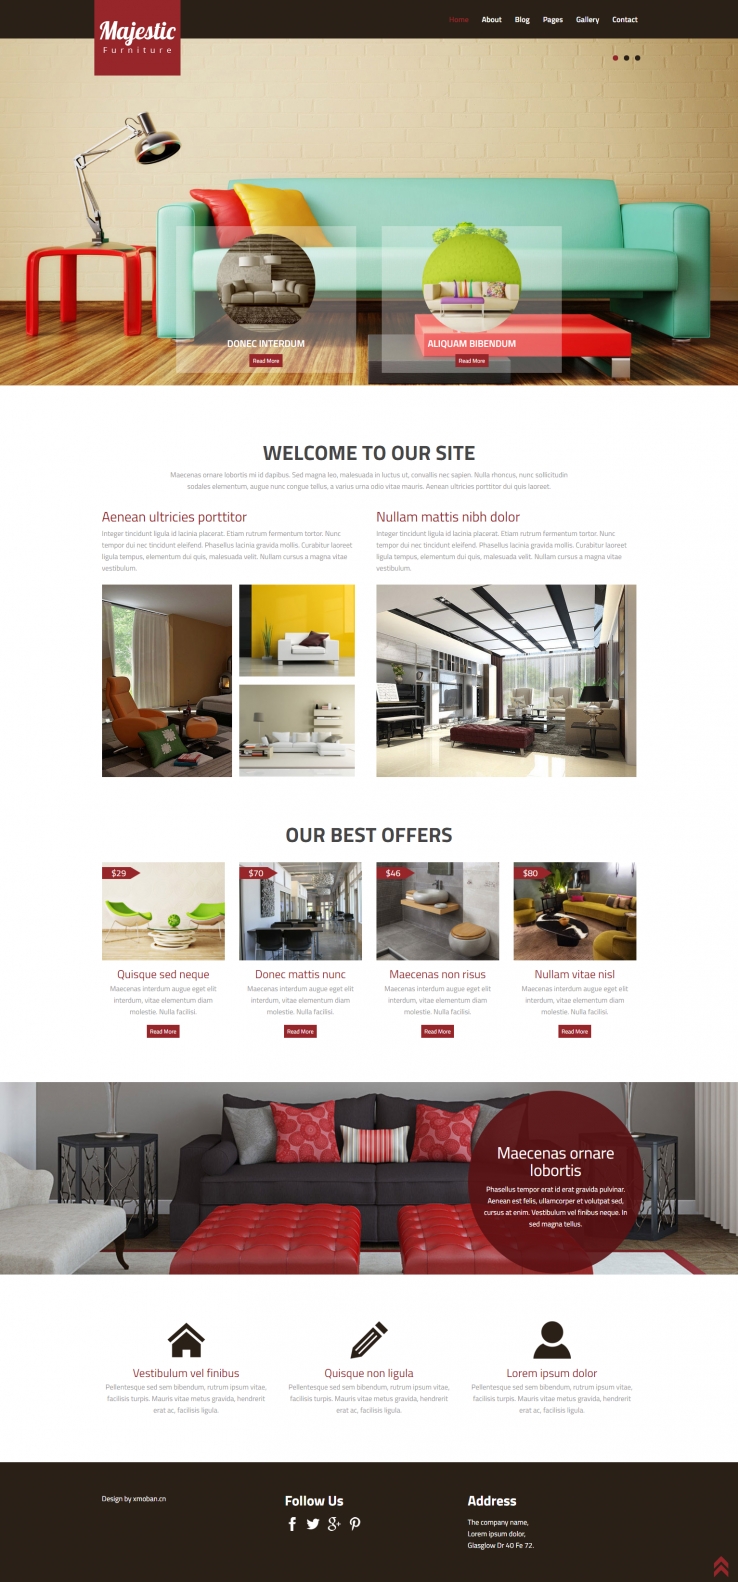 红色欧美风格的室内装饰设计企业网站源码下载